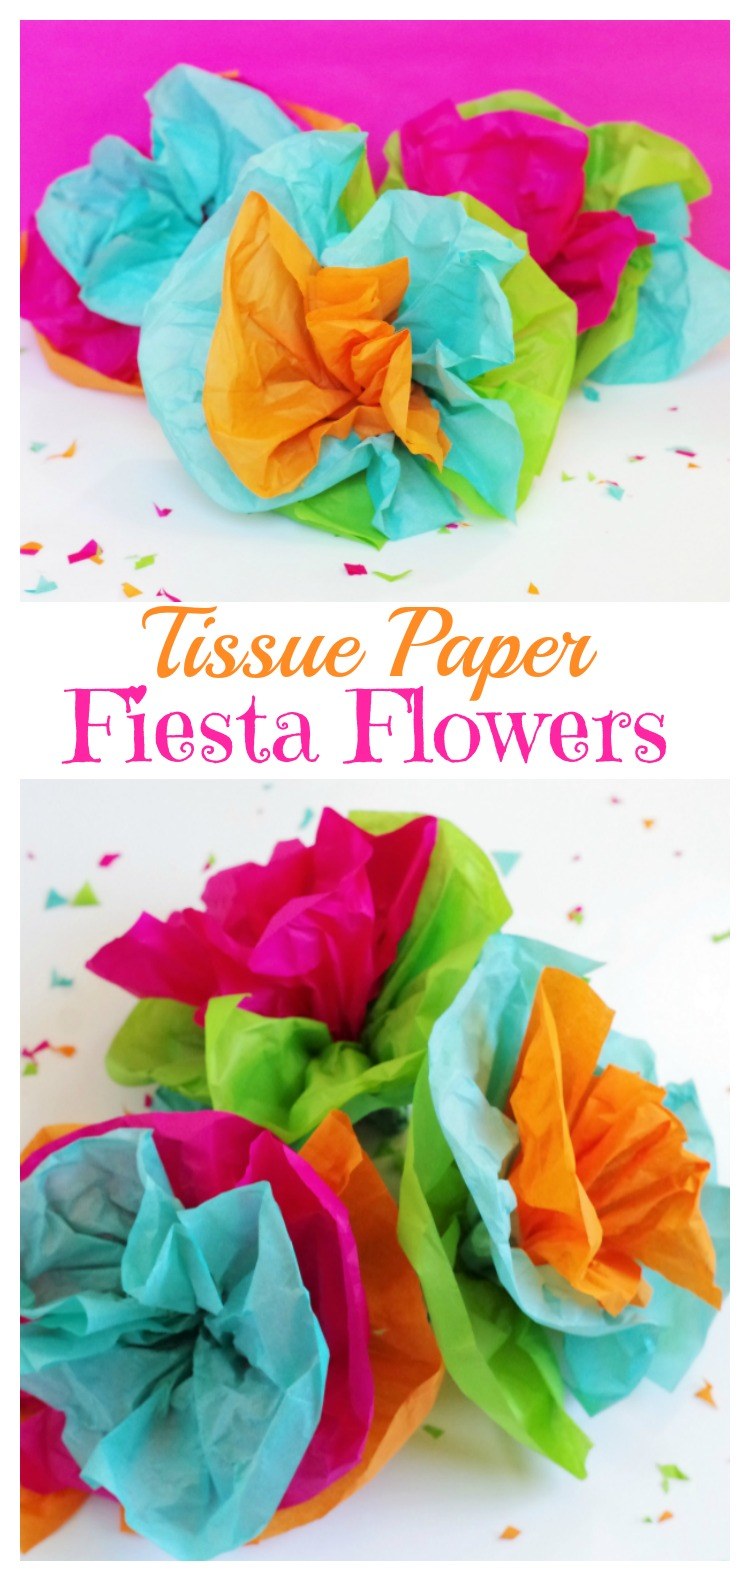 TISSUE PAPER FIESTA FLOWERS